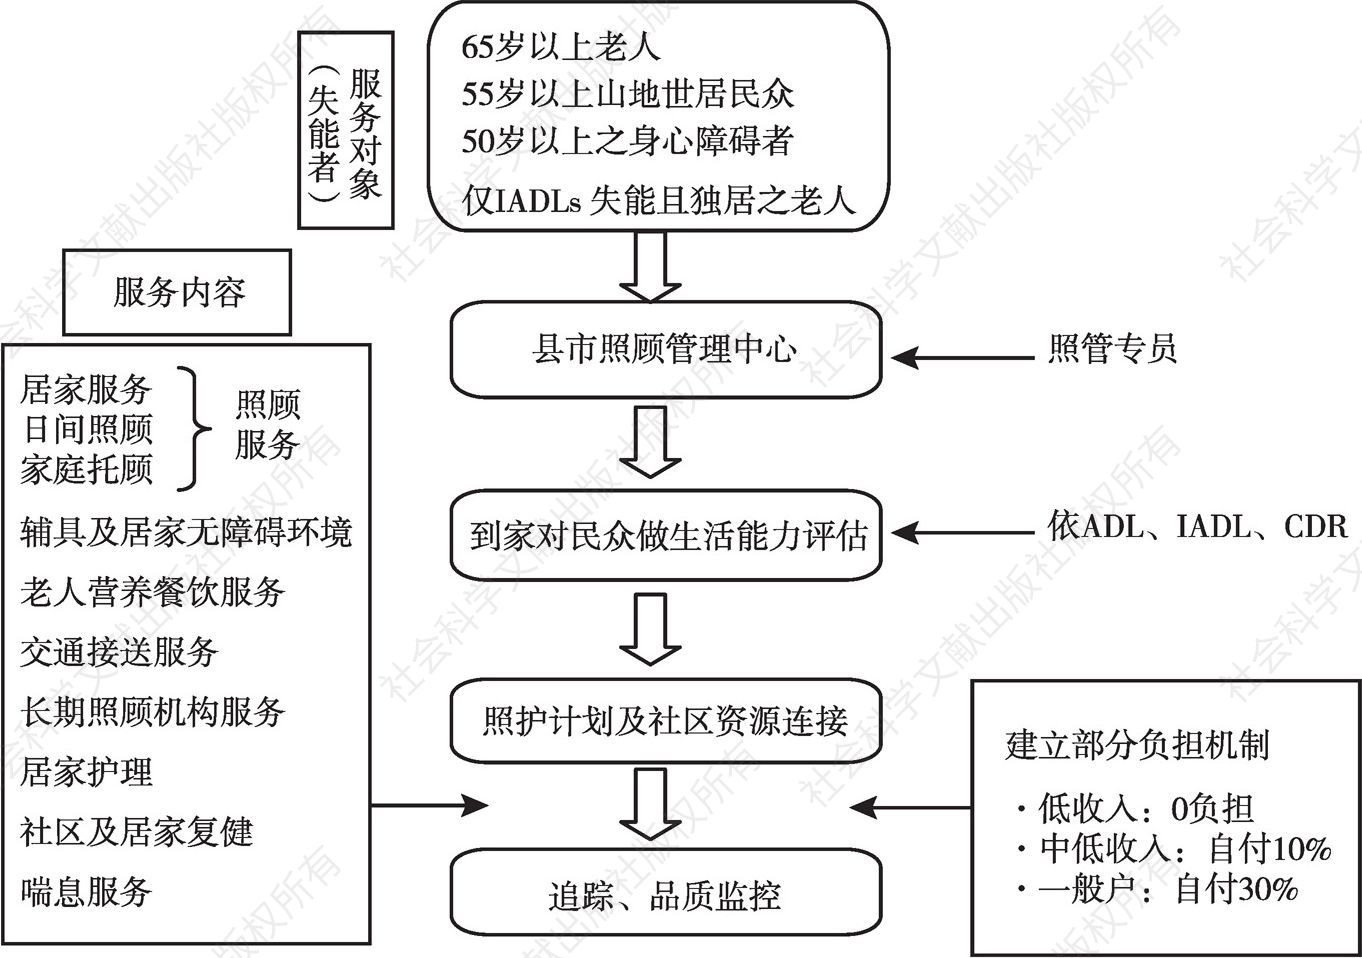 图6 台湾地区长照1.0服务输送体系